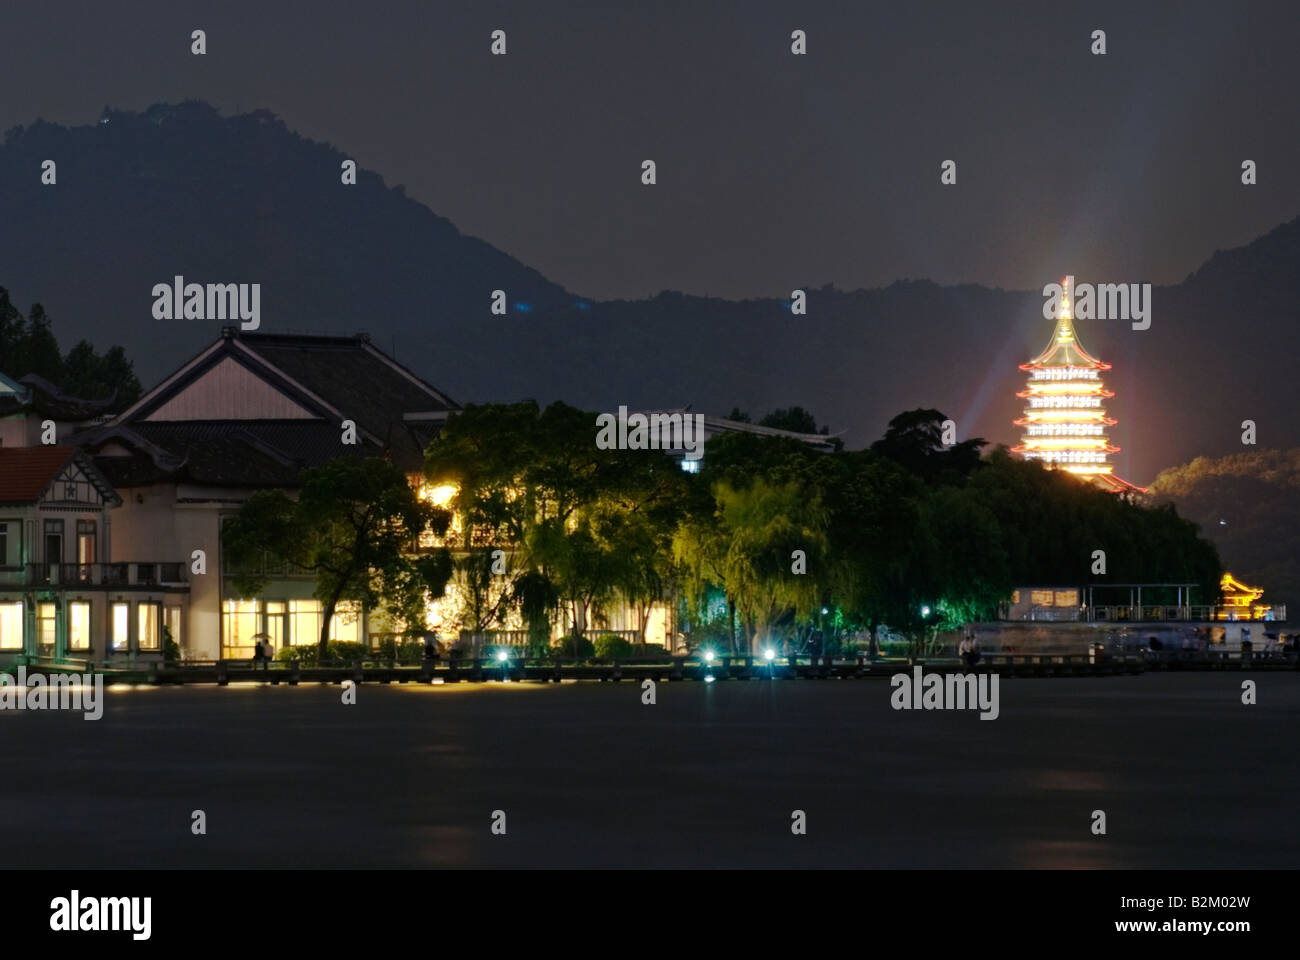 China, Hangzhou, Xi Hu, West Lake At Night Stock Photo